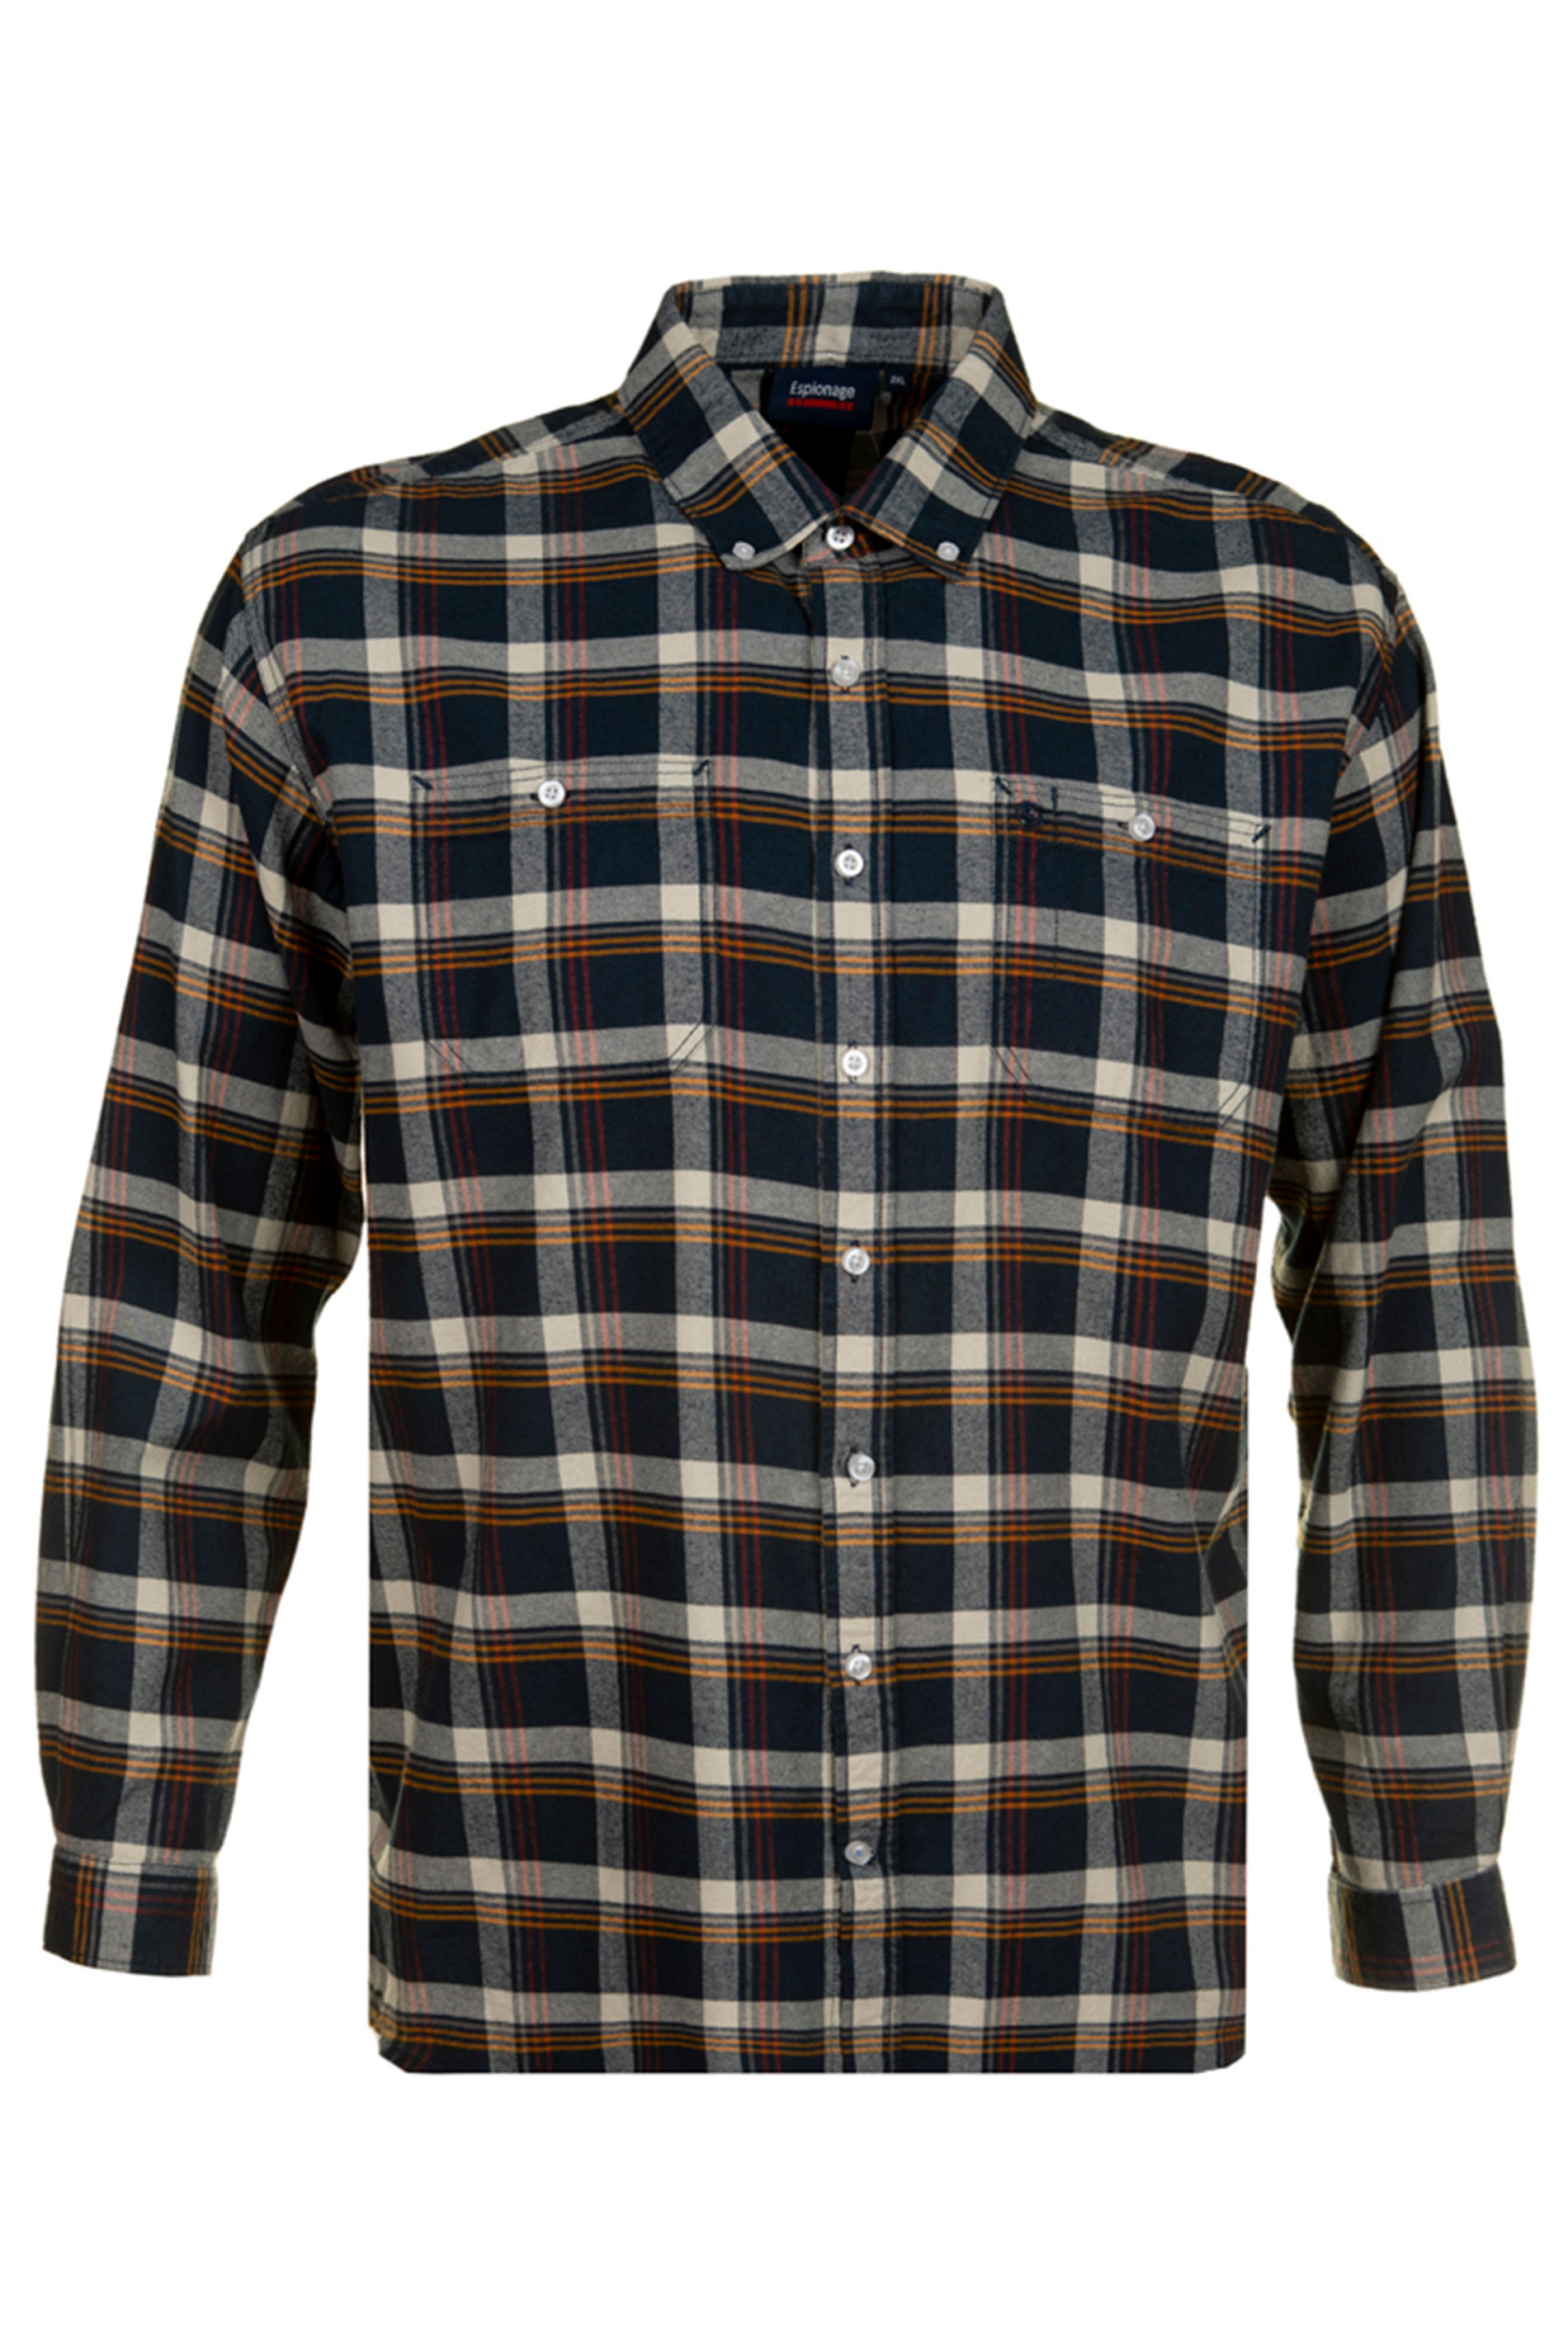 ESPIONAGE Navy & Cream Check Brushed Cotton Flannel Shirt | BadRhnio ...